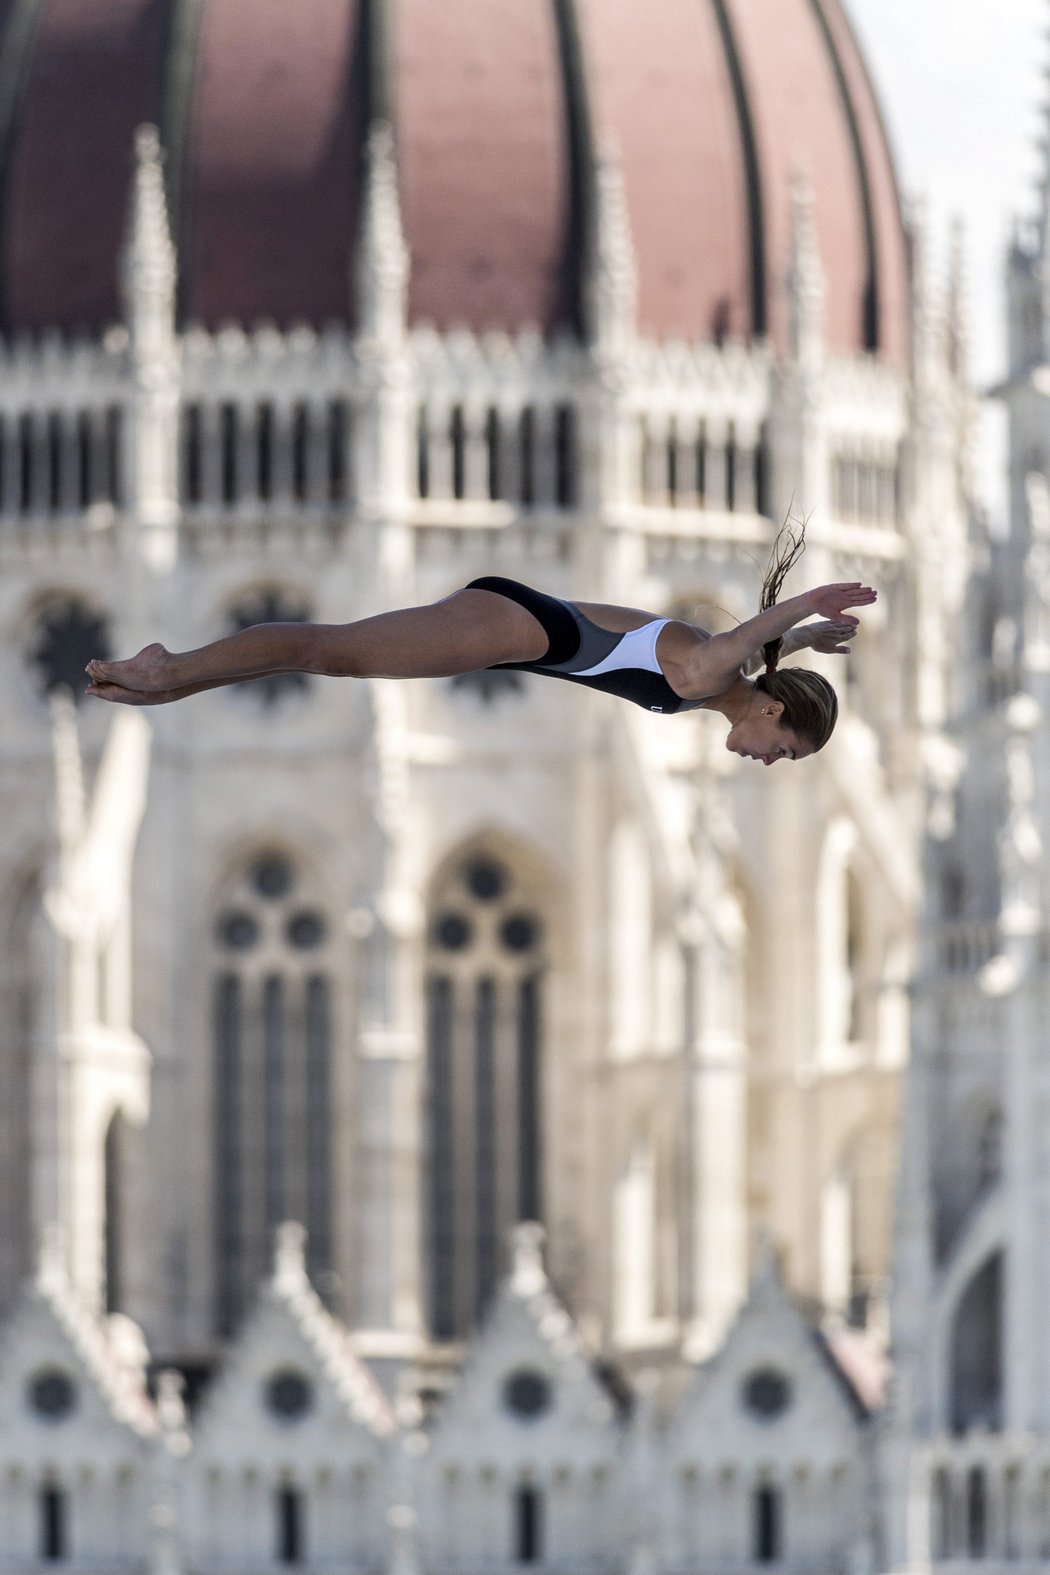 I ženy skáčou z výšky před maďarským parlamentem, na snímku Tara Tiraová z USA